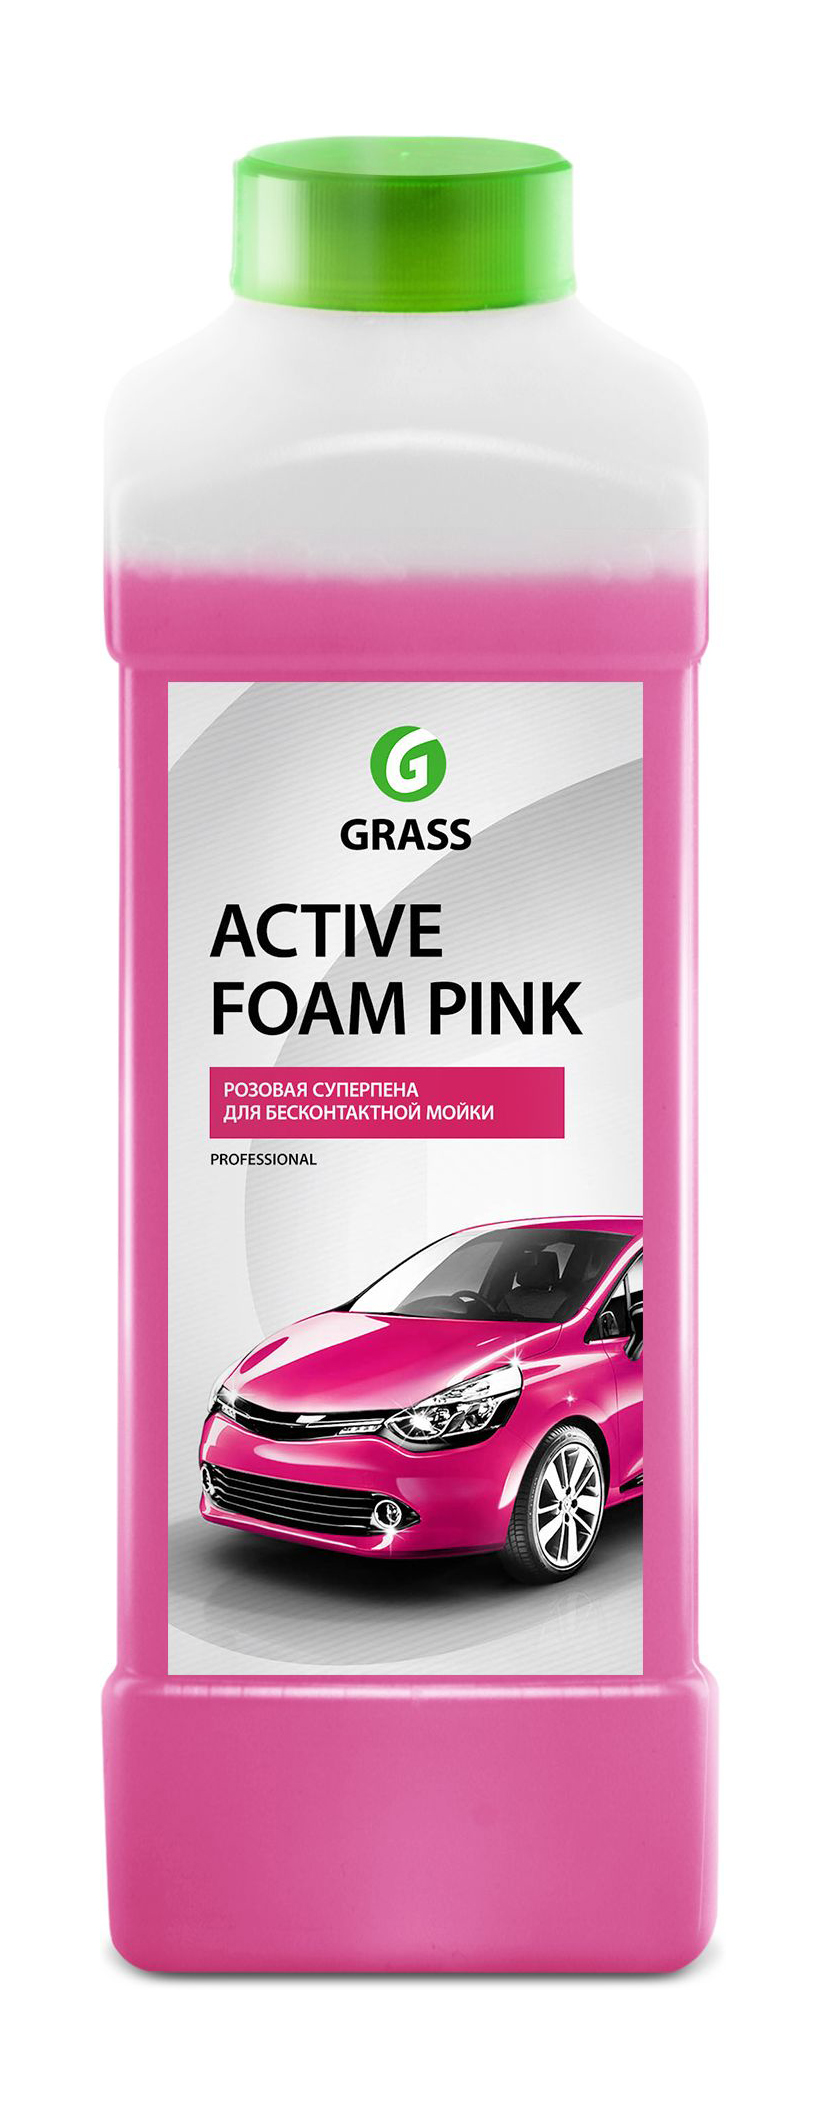 Активная пена Grass Active Foam Pink 1 л фото